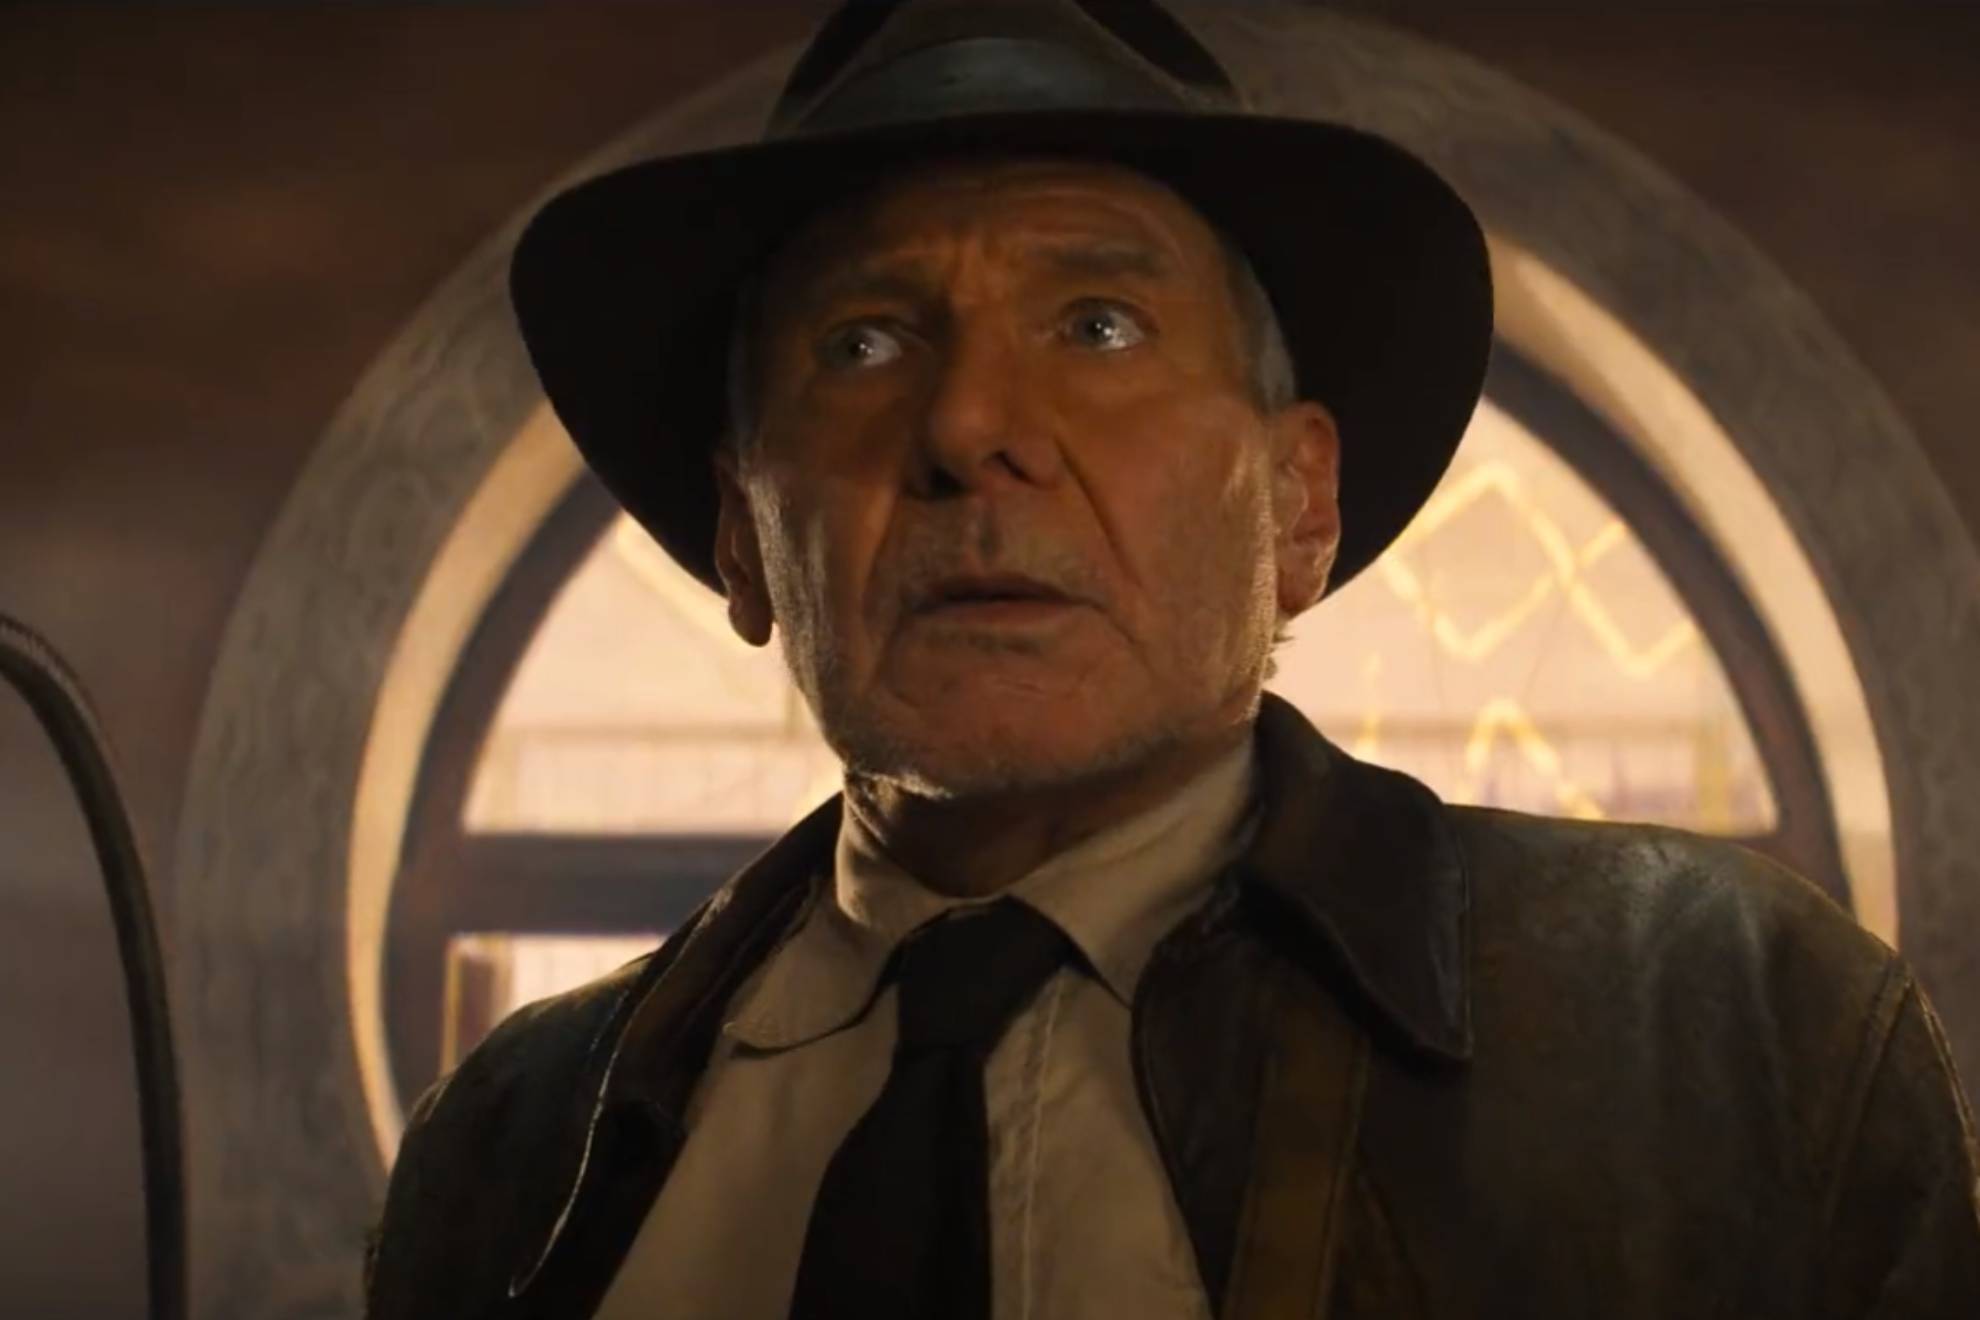 La quinta entrega de Indiana Jones ya tiene título y tráiler oficial